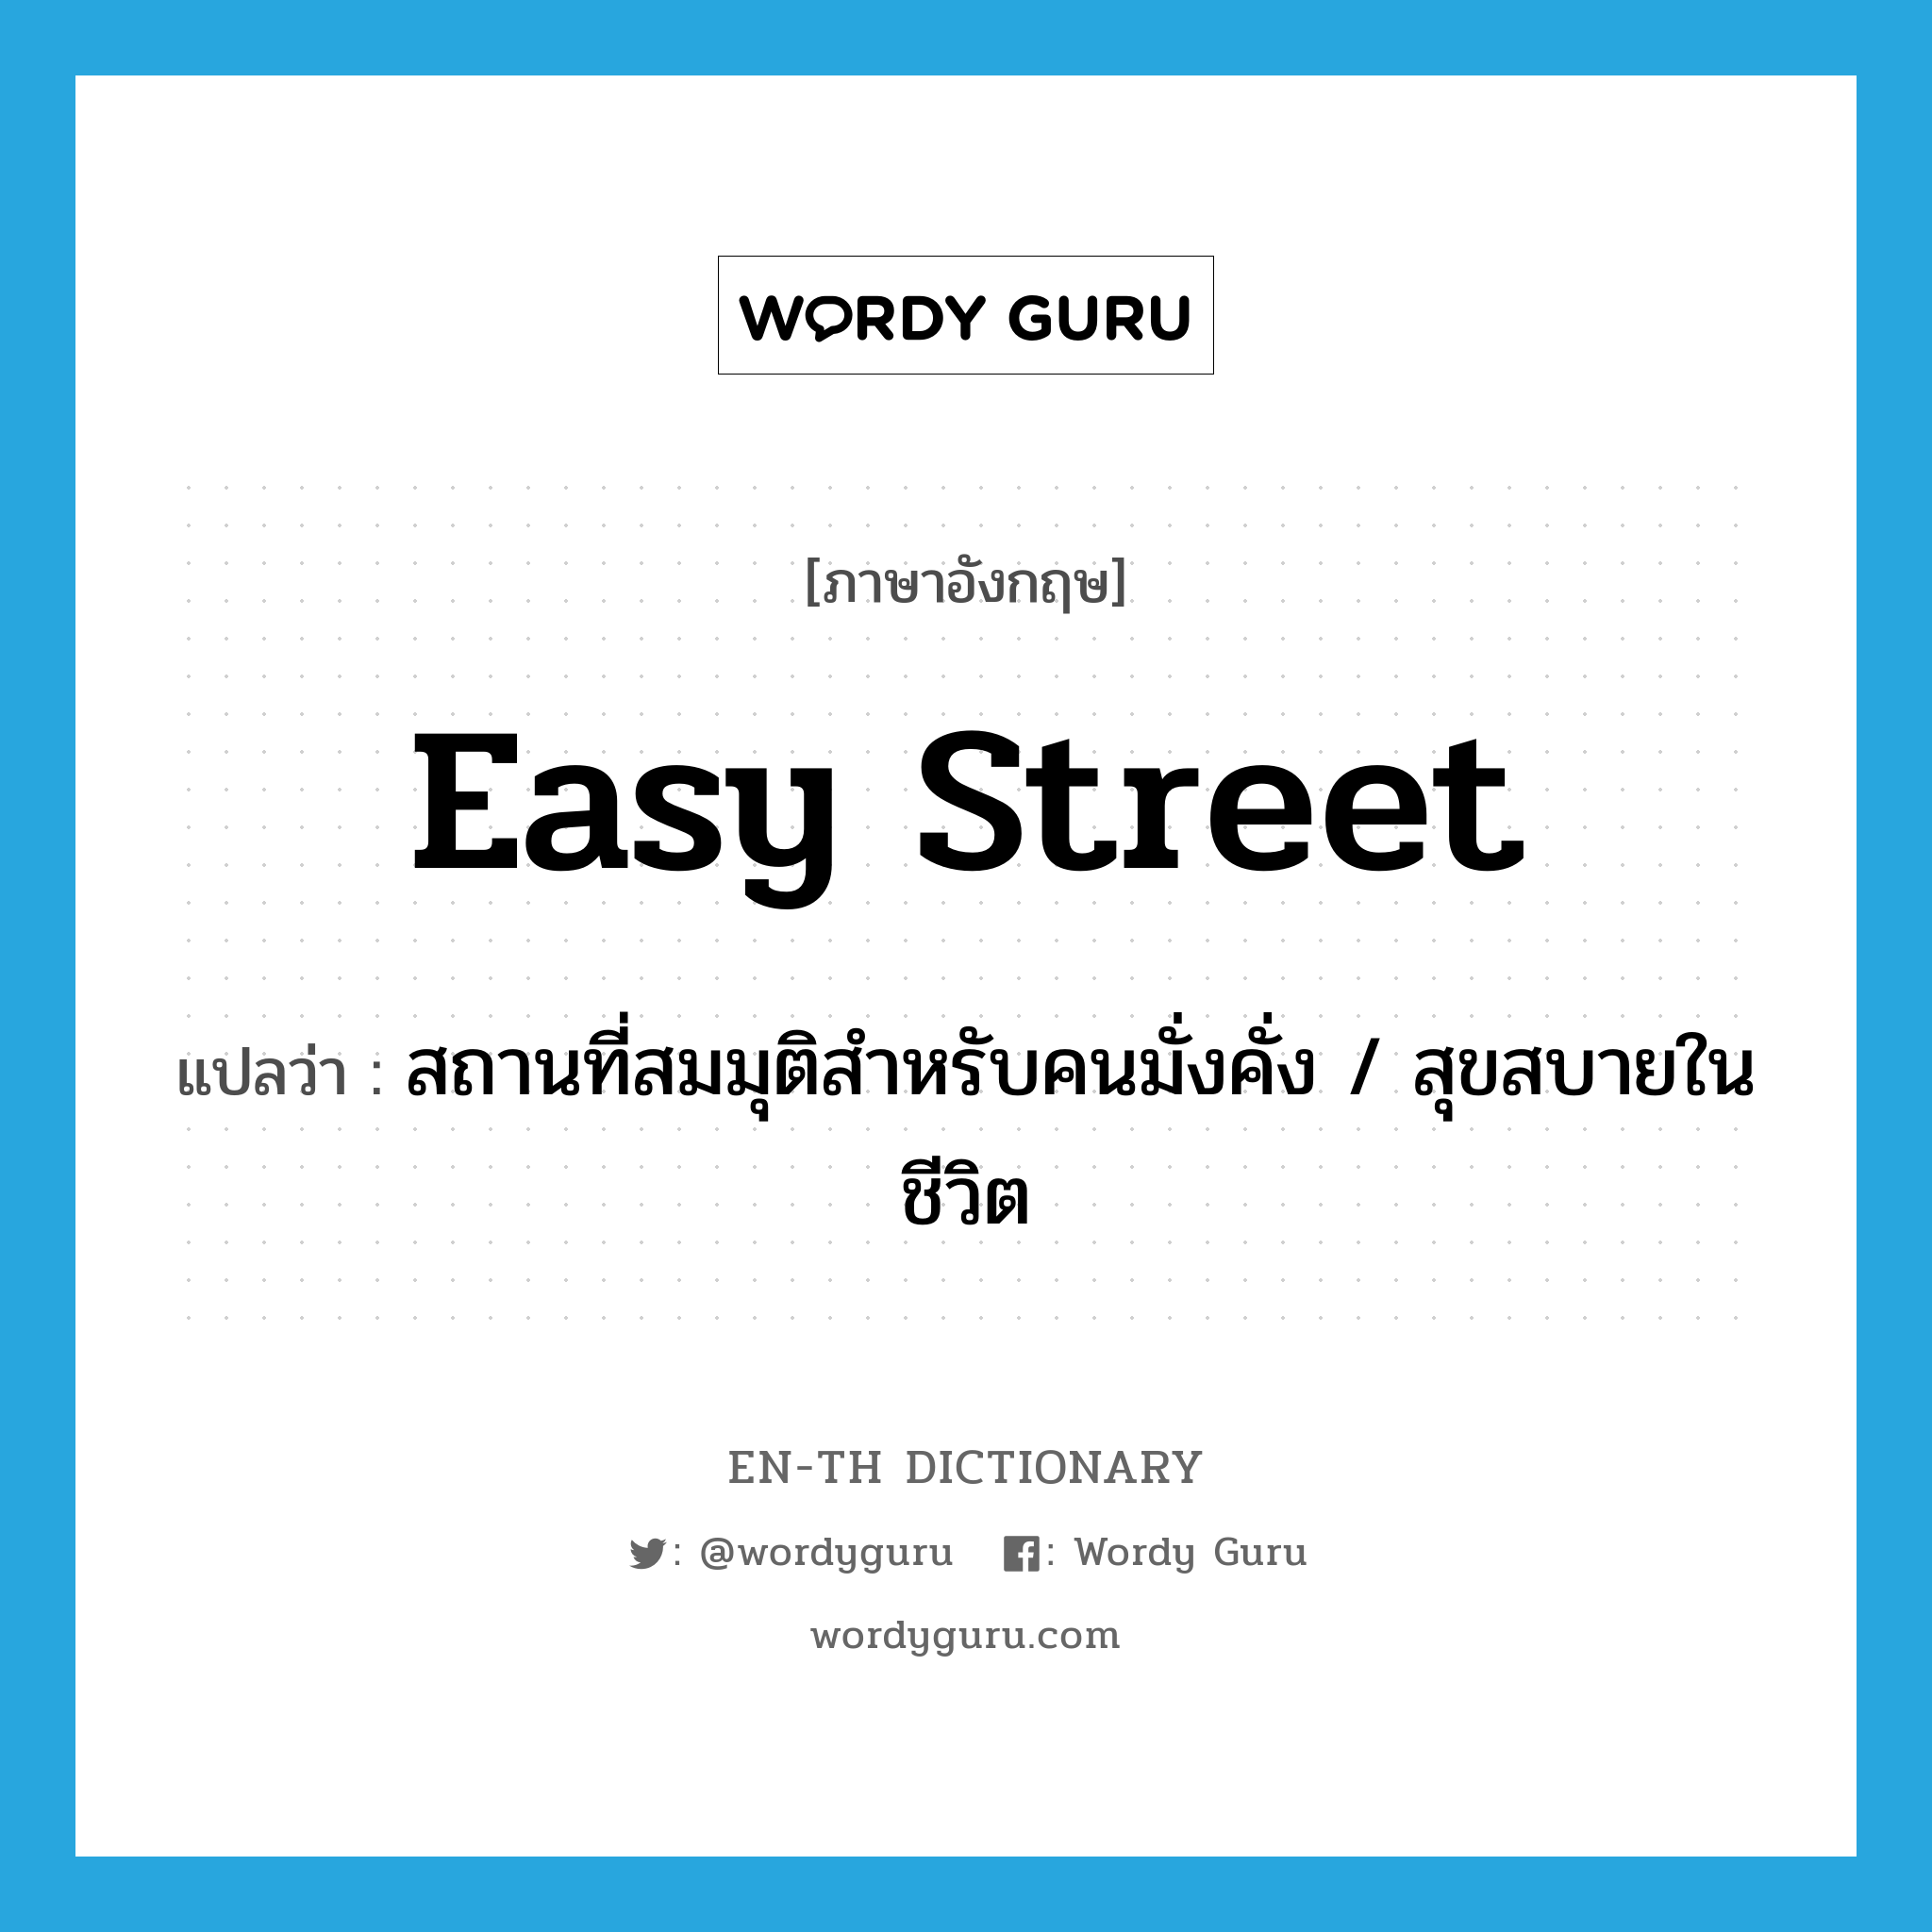 สถานที่สมมุติสำหรับคนมั่งคั่ง / สุขสบายในชีวิต ภาษาอังกฤษ?, คำศัพท์ภาษาอังกฤษ สถานที่สมมุติสำหรับคนมั่งคั่ง / สุขสบายในชีวิต แปลว่า easy street ประเภท SL หมวด SL